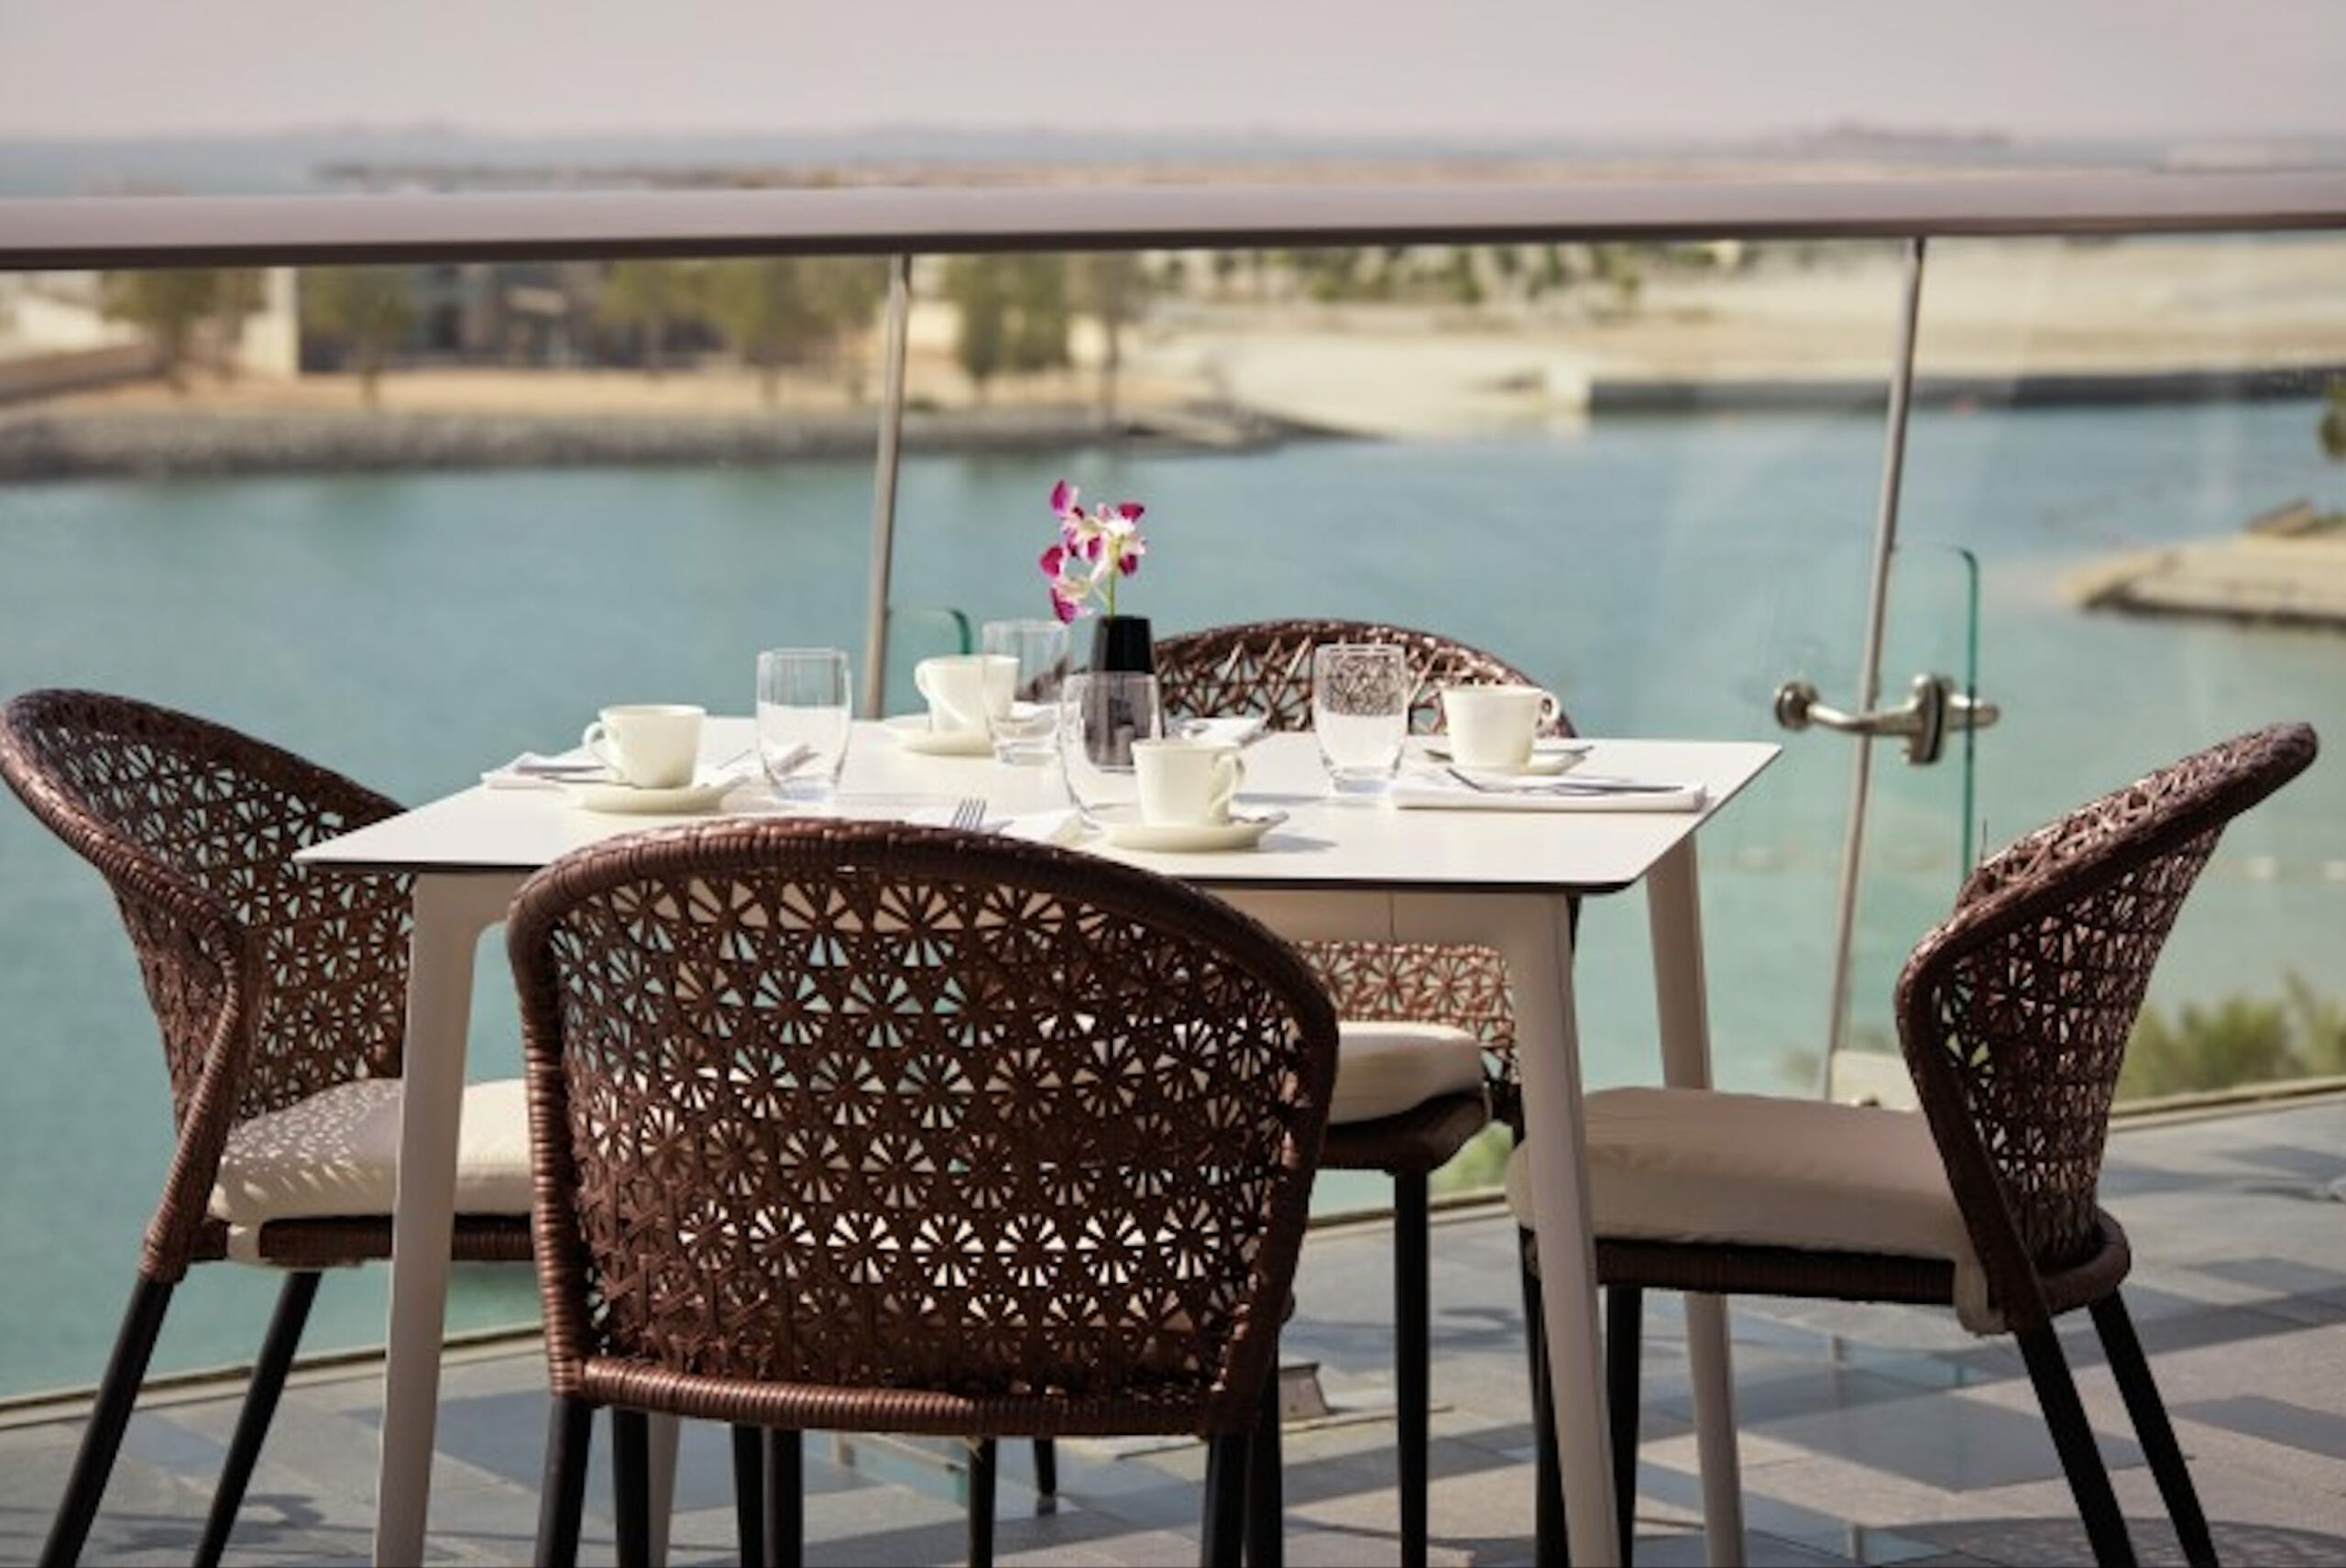 Grand Hyatt Abu Dhabi Hotel